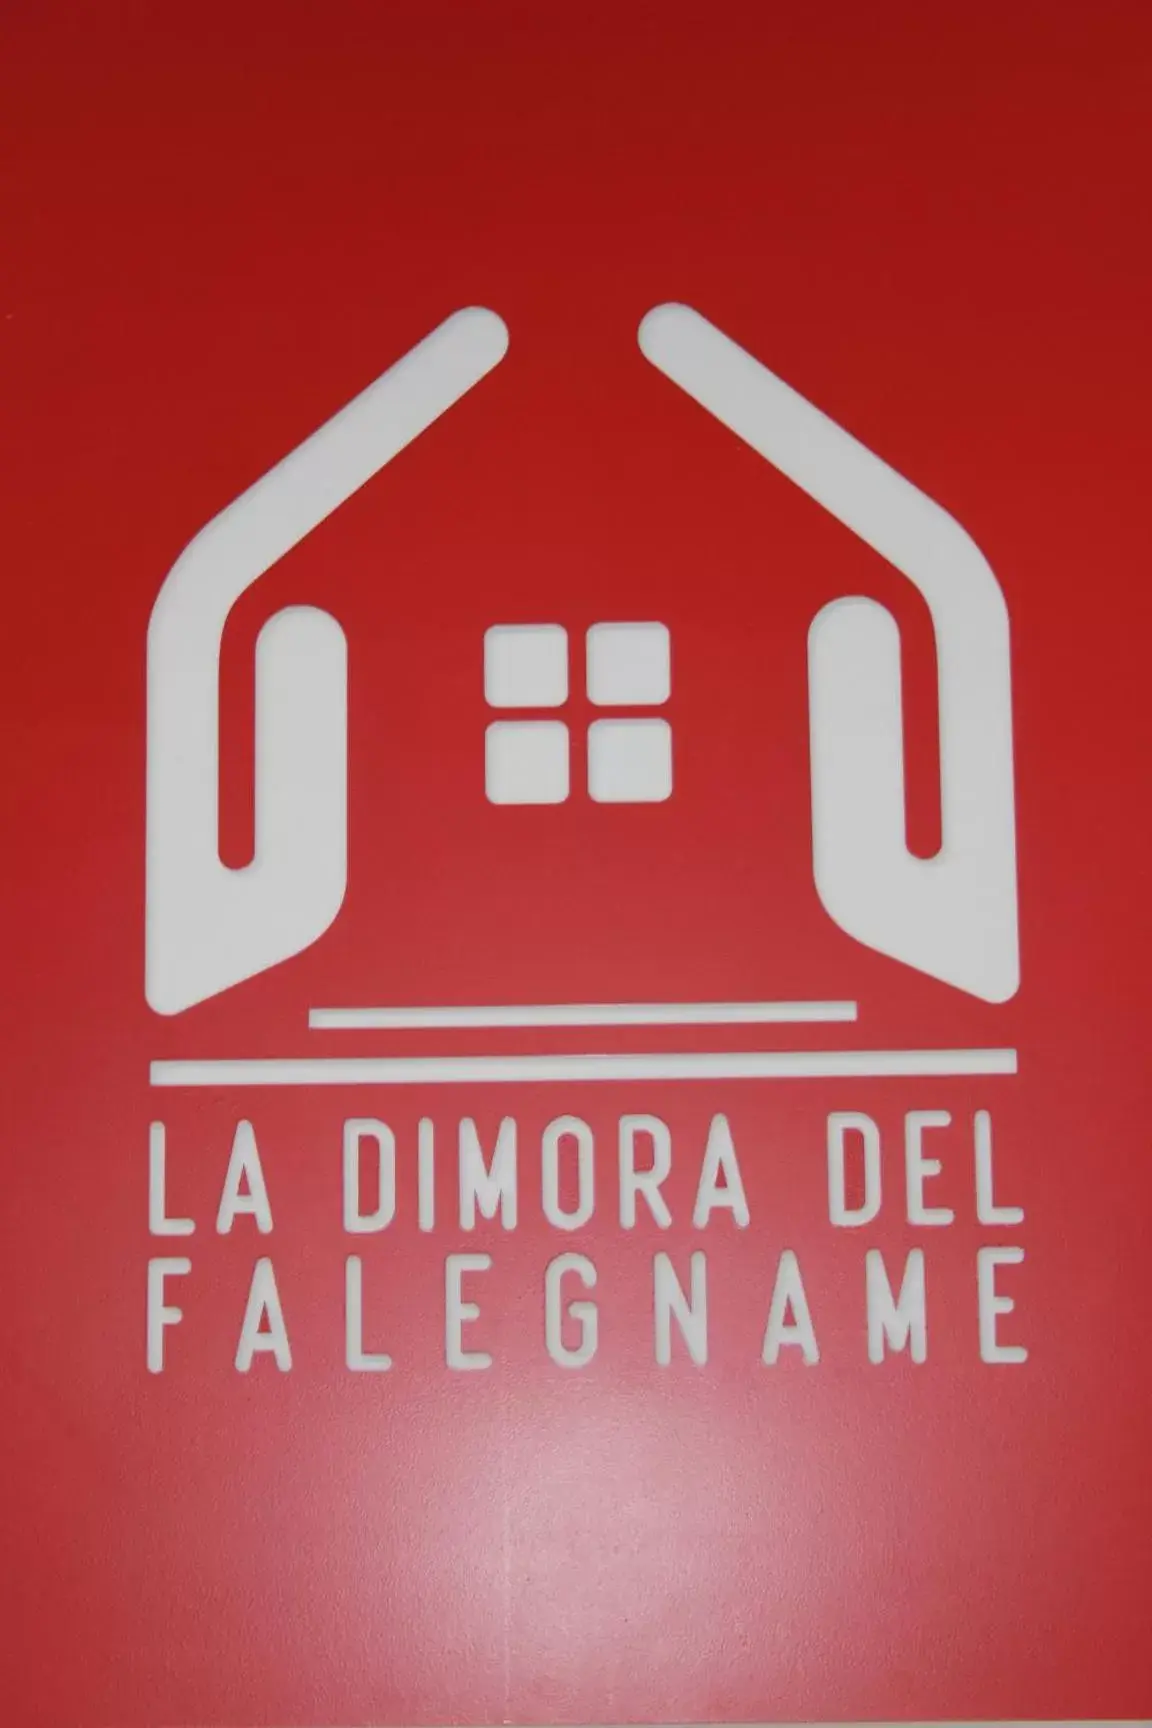 Logo/Certificate/Sign in LA DIMORA DEL FALEGNAME